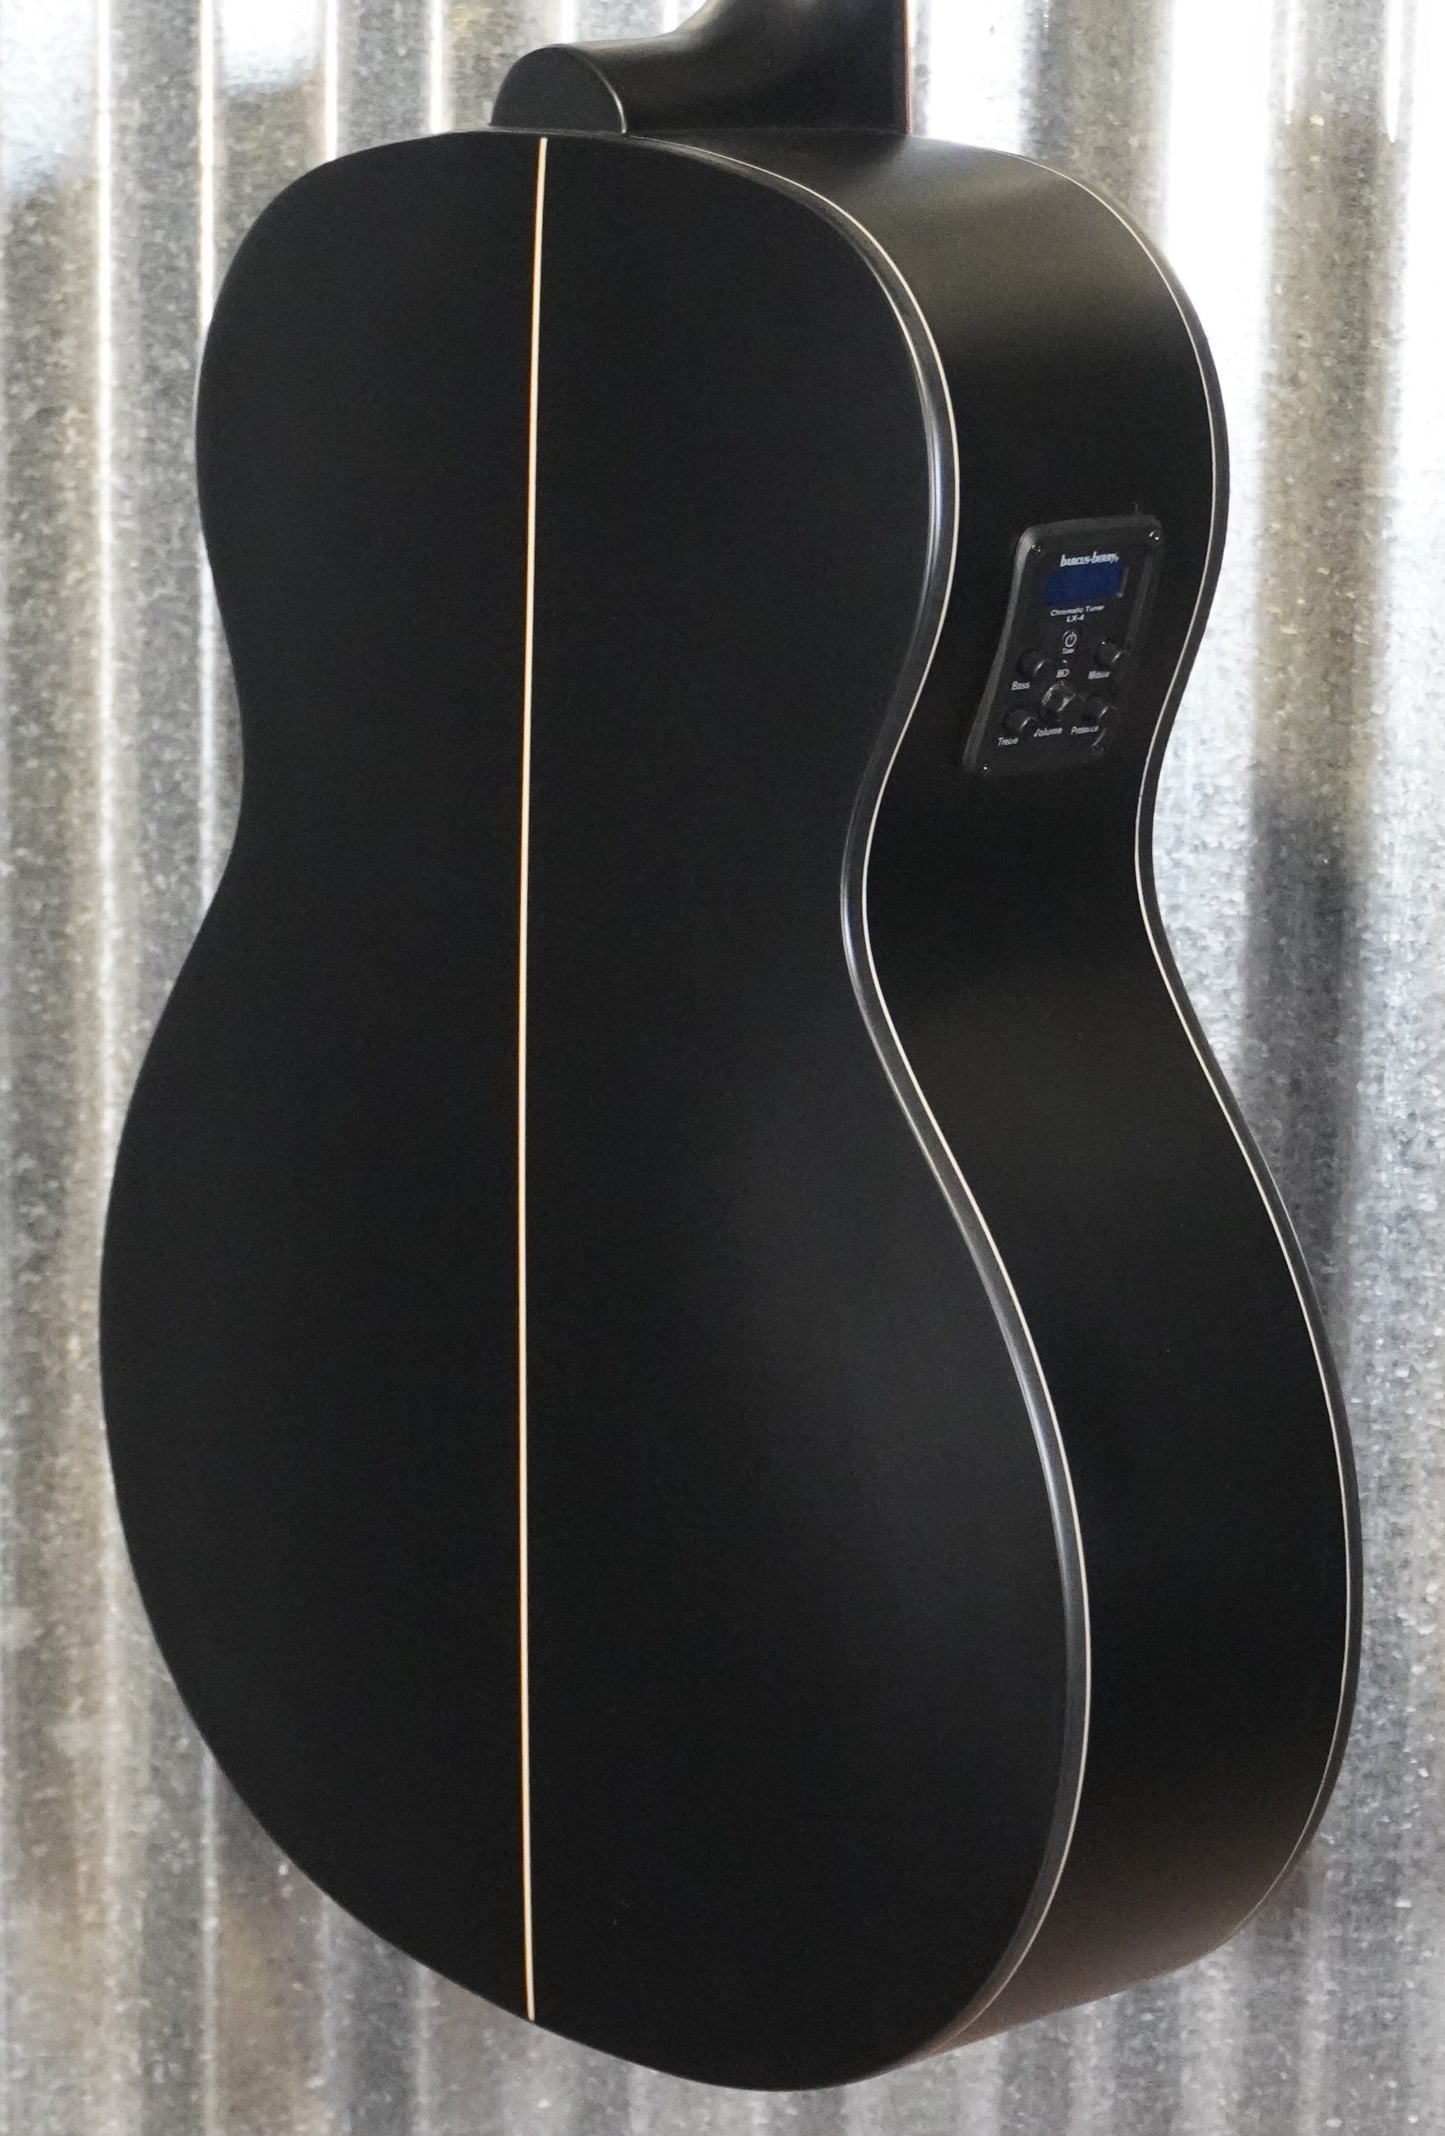 Washburn Deep Forest Ebony FE Acoustic Electric Guitar DFEFE-U #5958